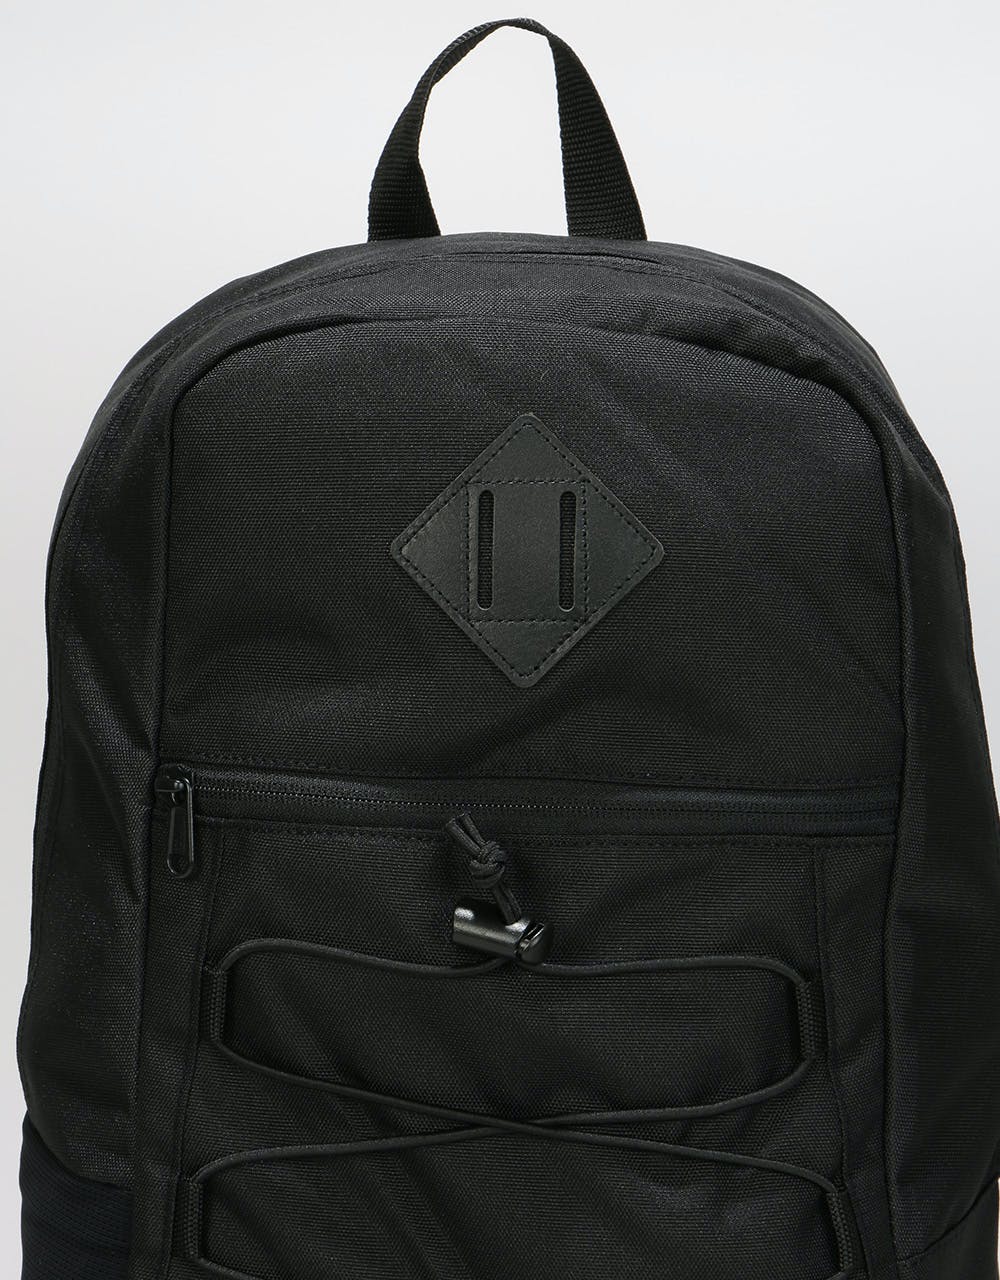 Vans Snag Backpack - Black